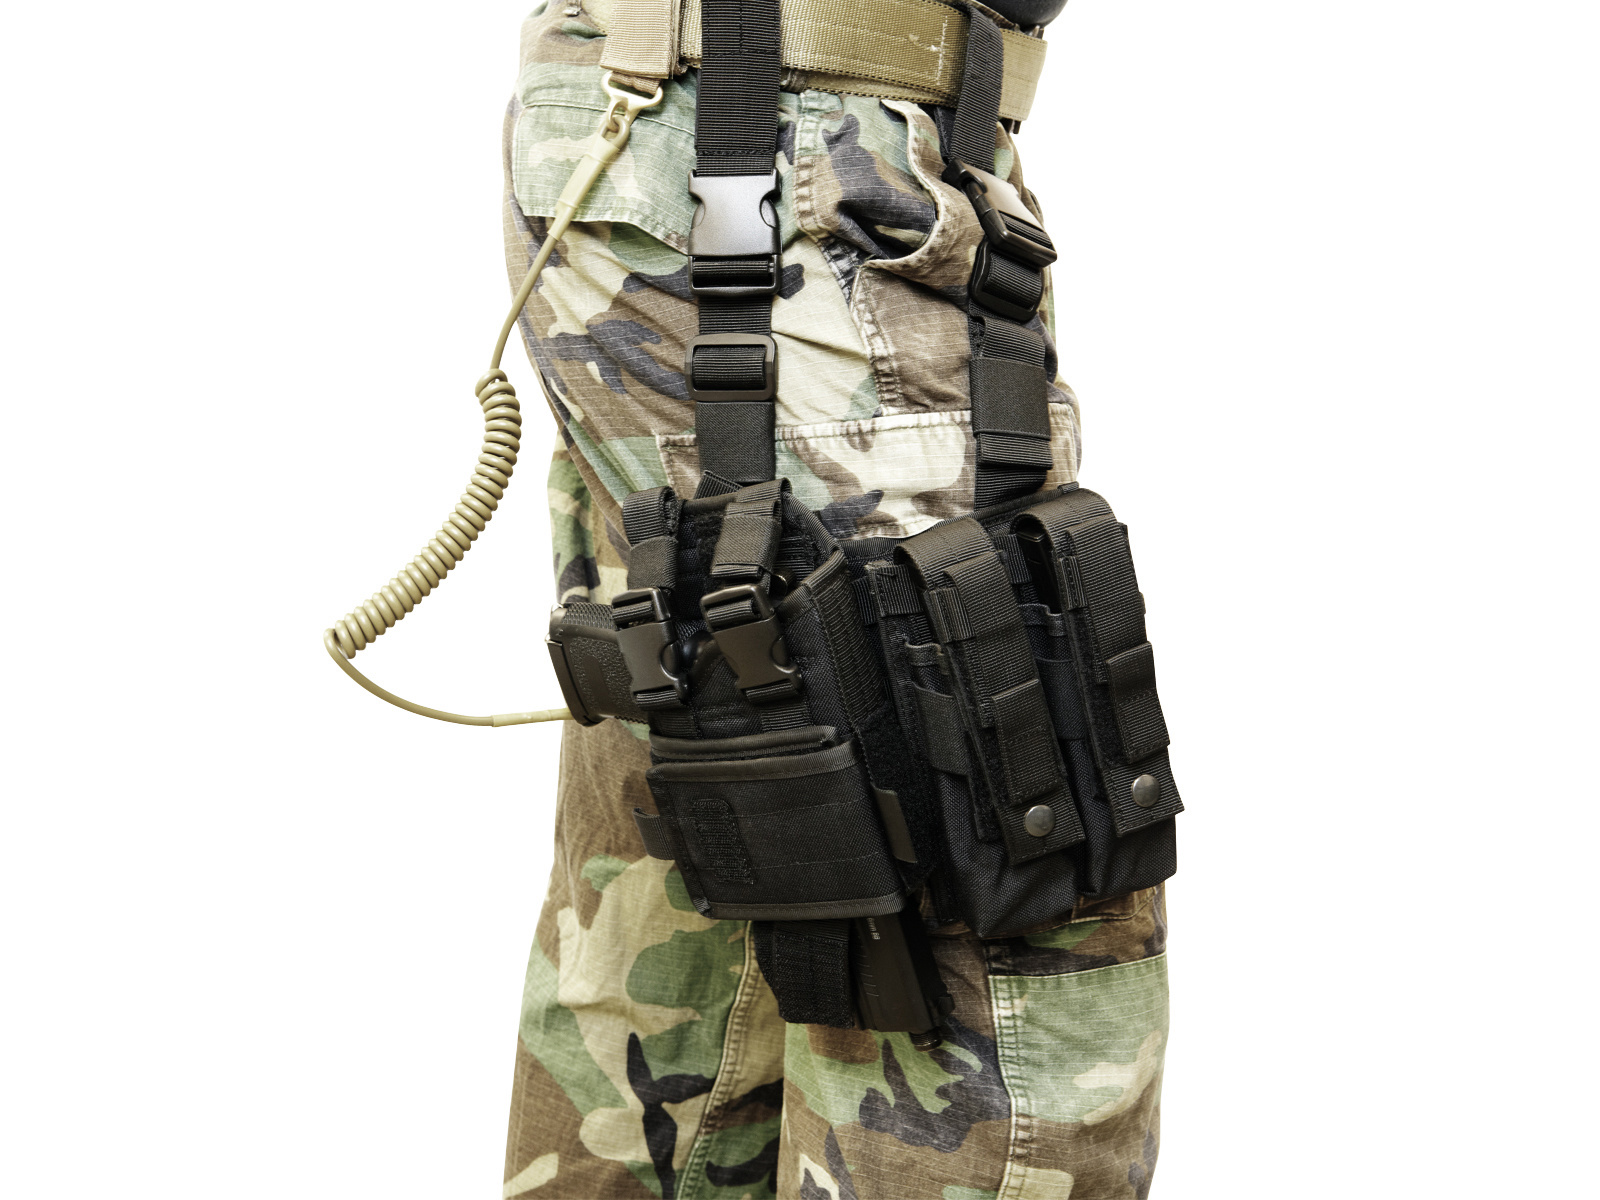 ASG Lanyard - Tactical Pistol Lanyard - TAN